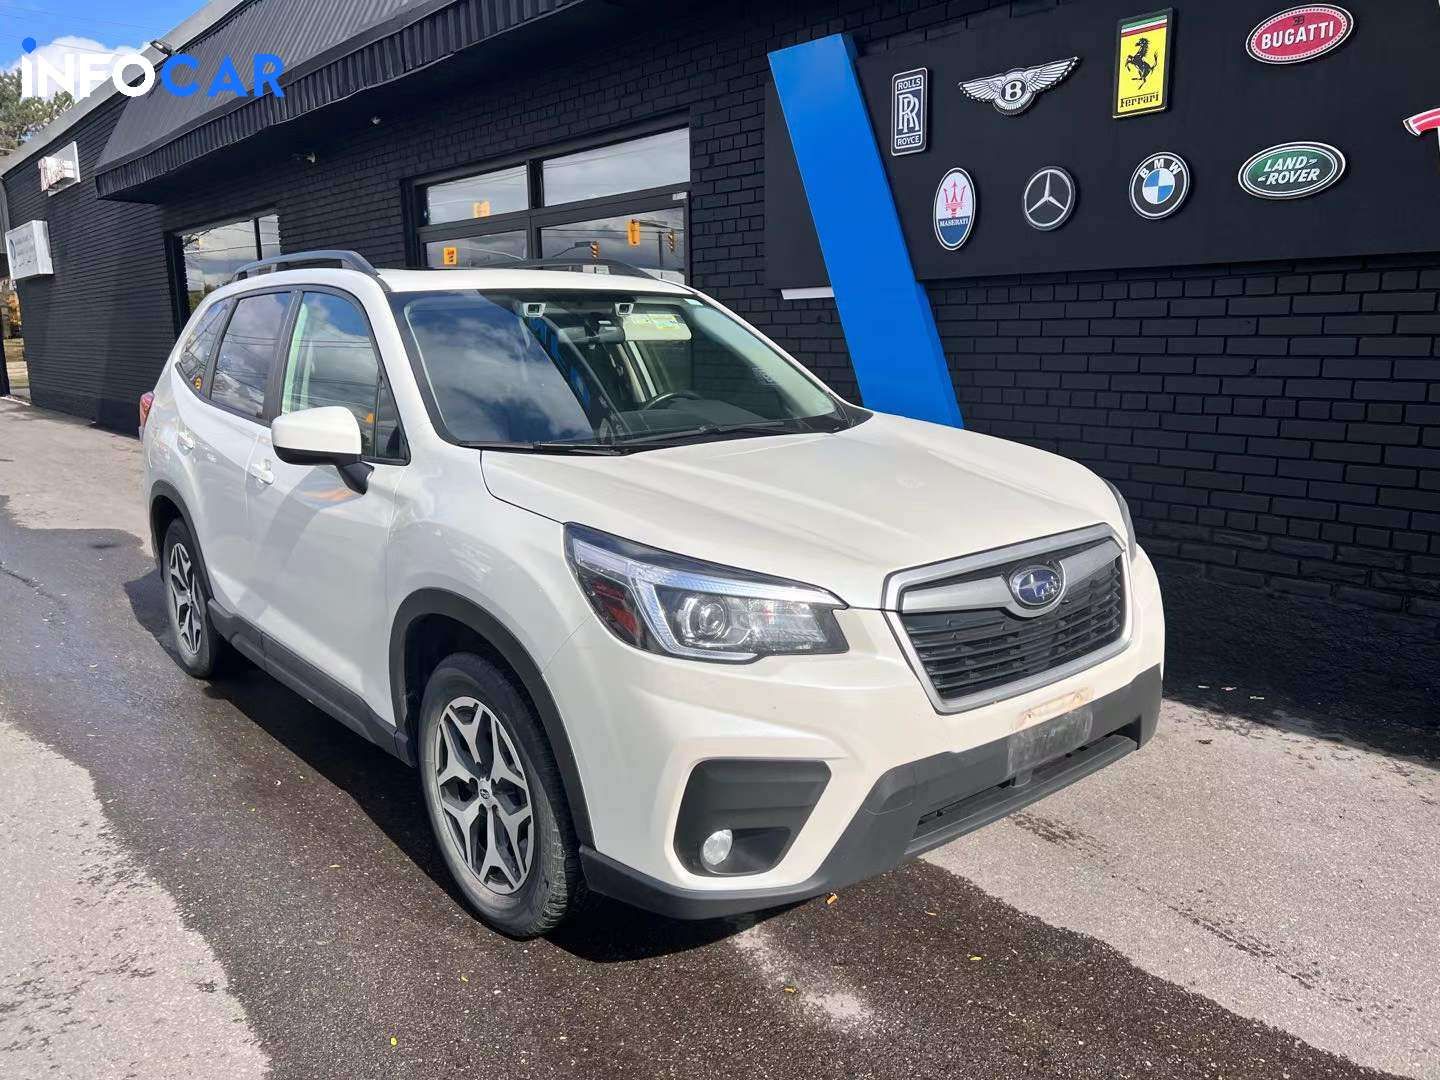 2019 Subaru Forester Touring - INFOCAR - Toronto Auto Trading Platform